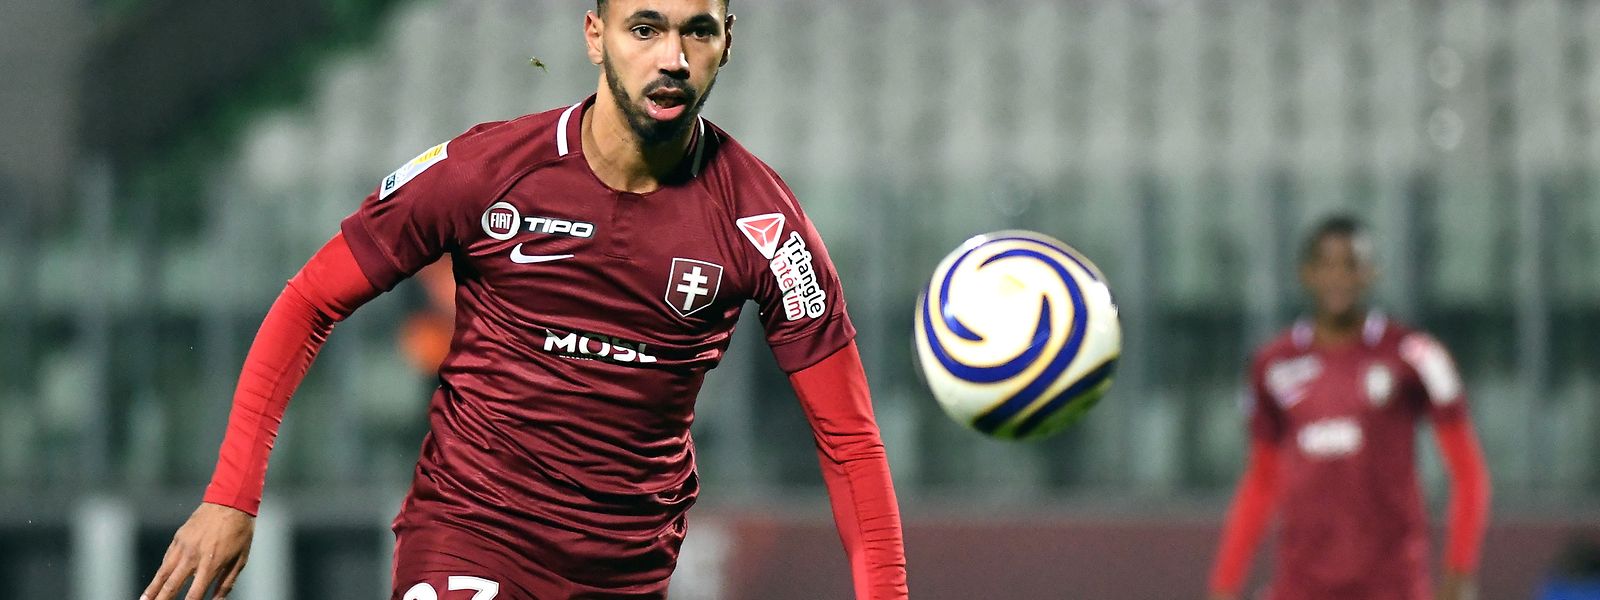 Farid Boulaya a rapidement remis le FC Metz sur les bons rails après le 2-0 du Havre à l'heure de jeu